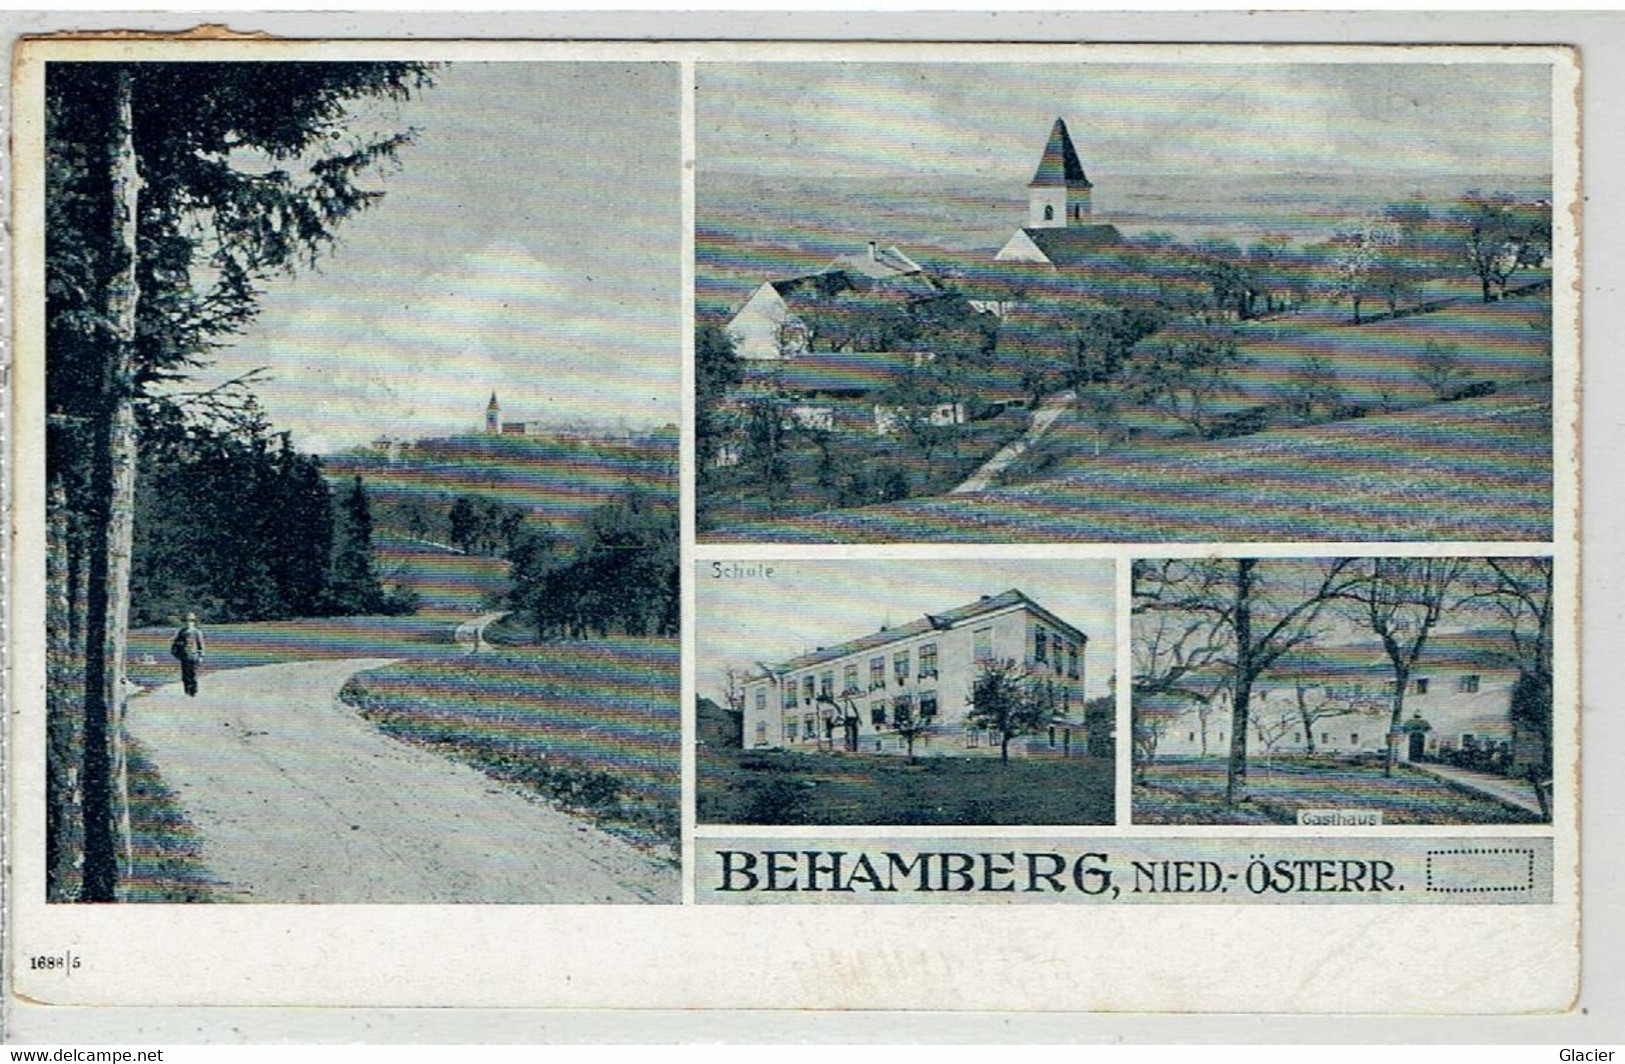 BEHAMBERG - Amstetten - Nied. Österreich - Total Ansicht - Schüle - Gasthaus - Amstetten